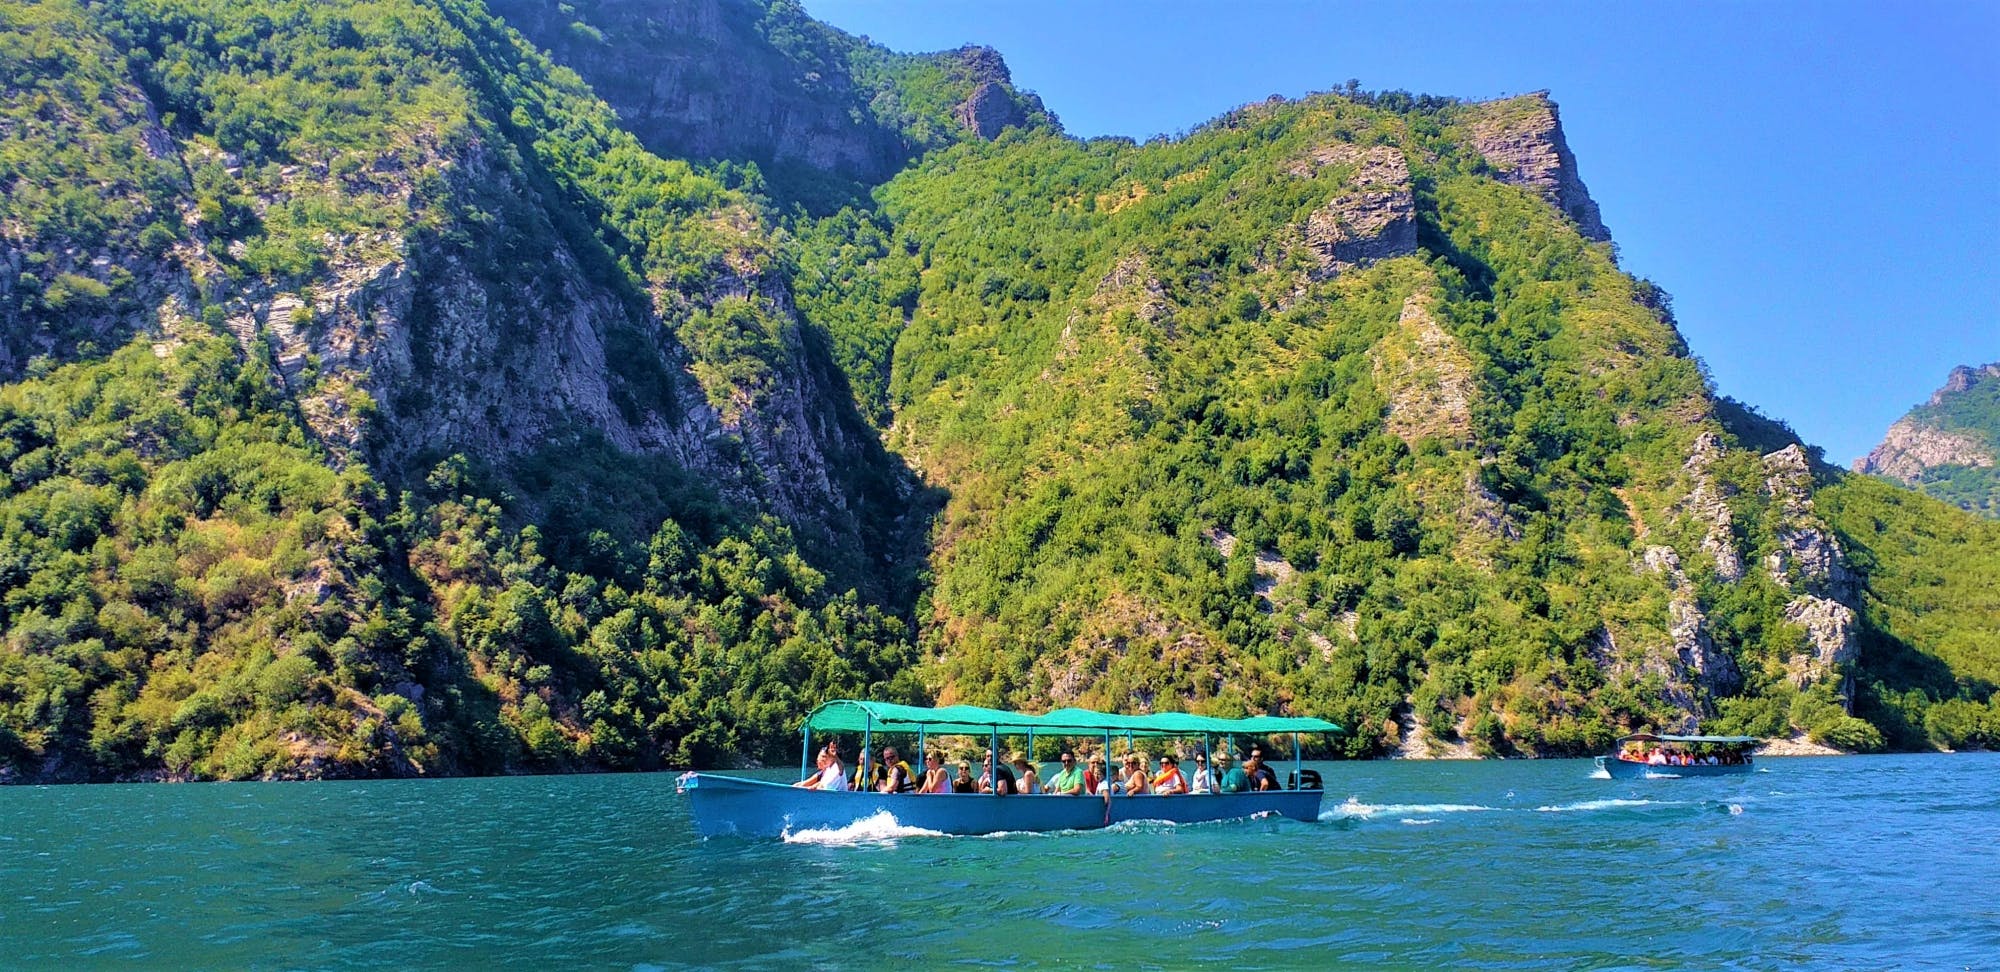 Lake Komani Tour and Boat Trip